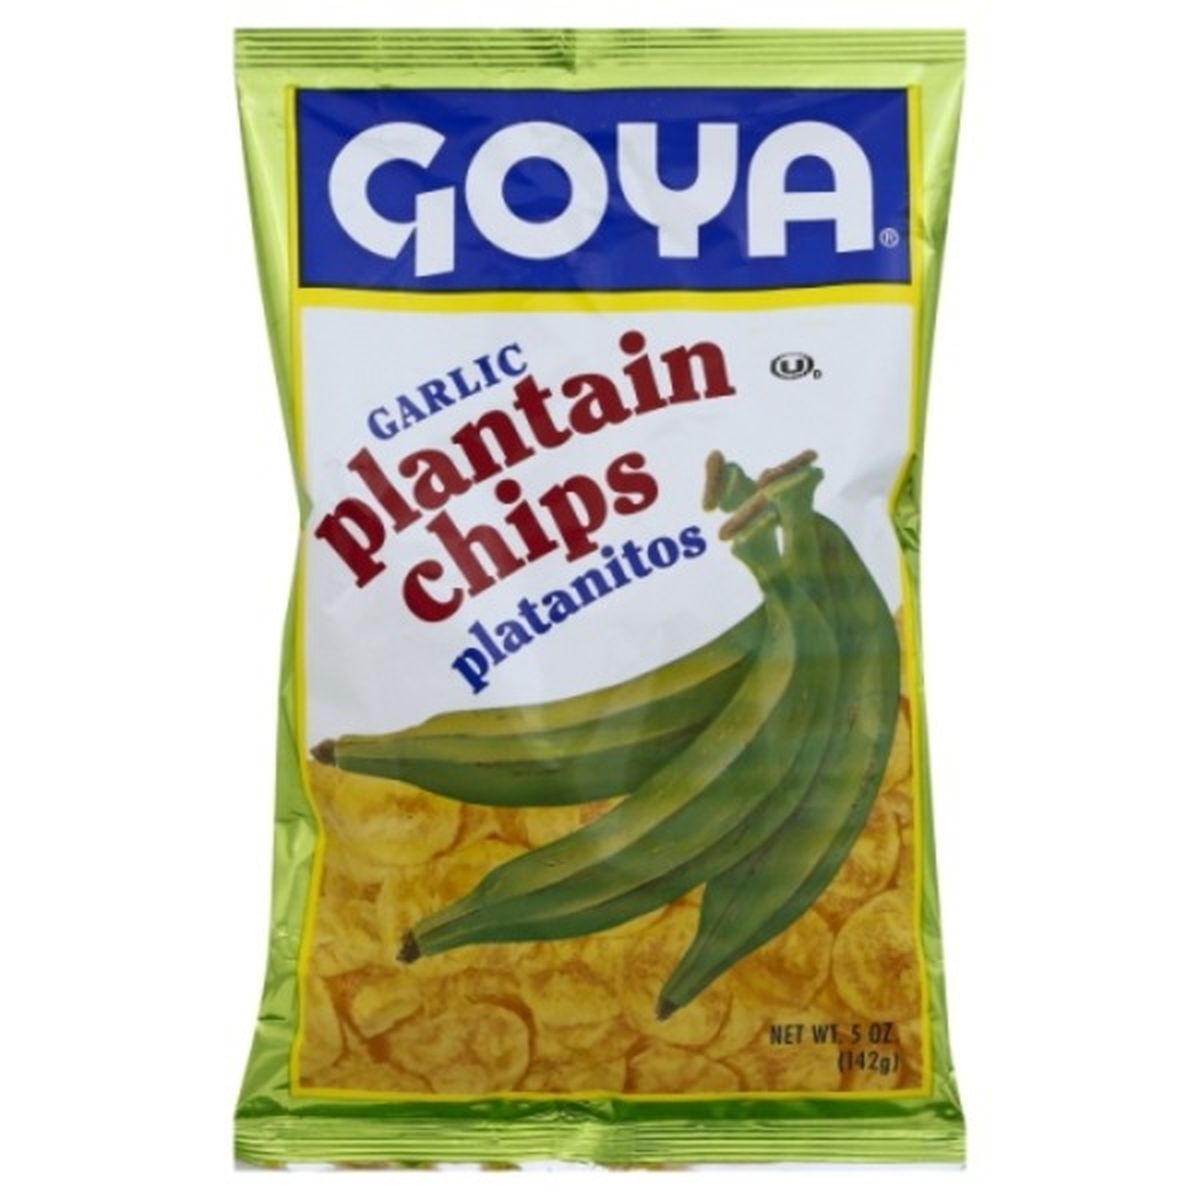 Calories in Goya Plantain Chips, Garlic, Platanitos